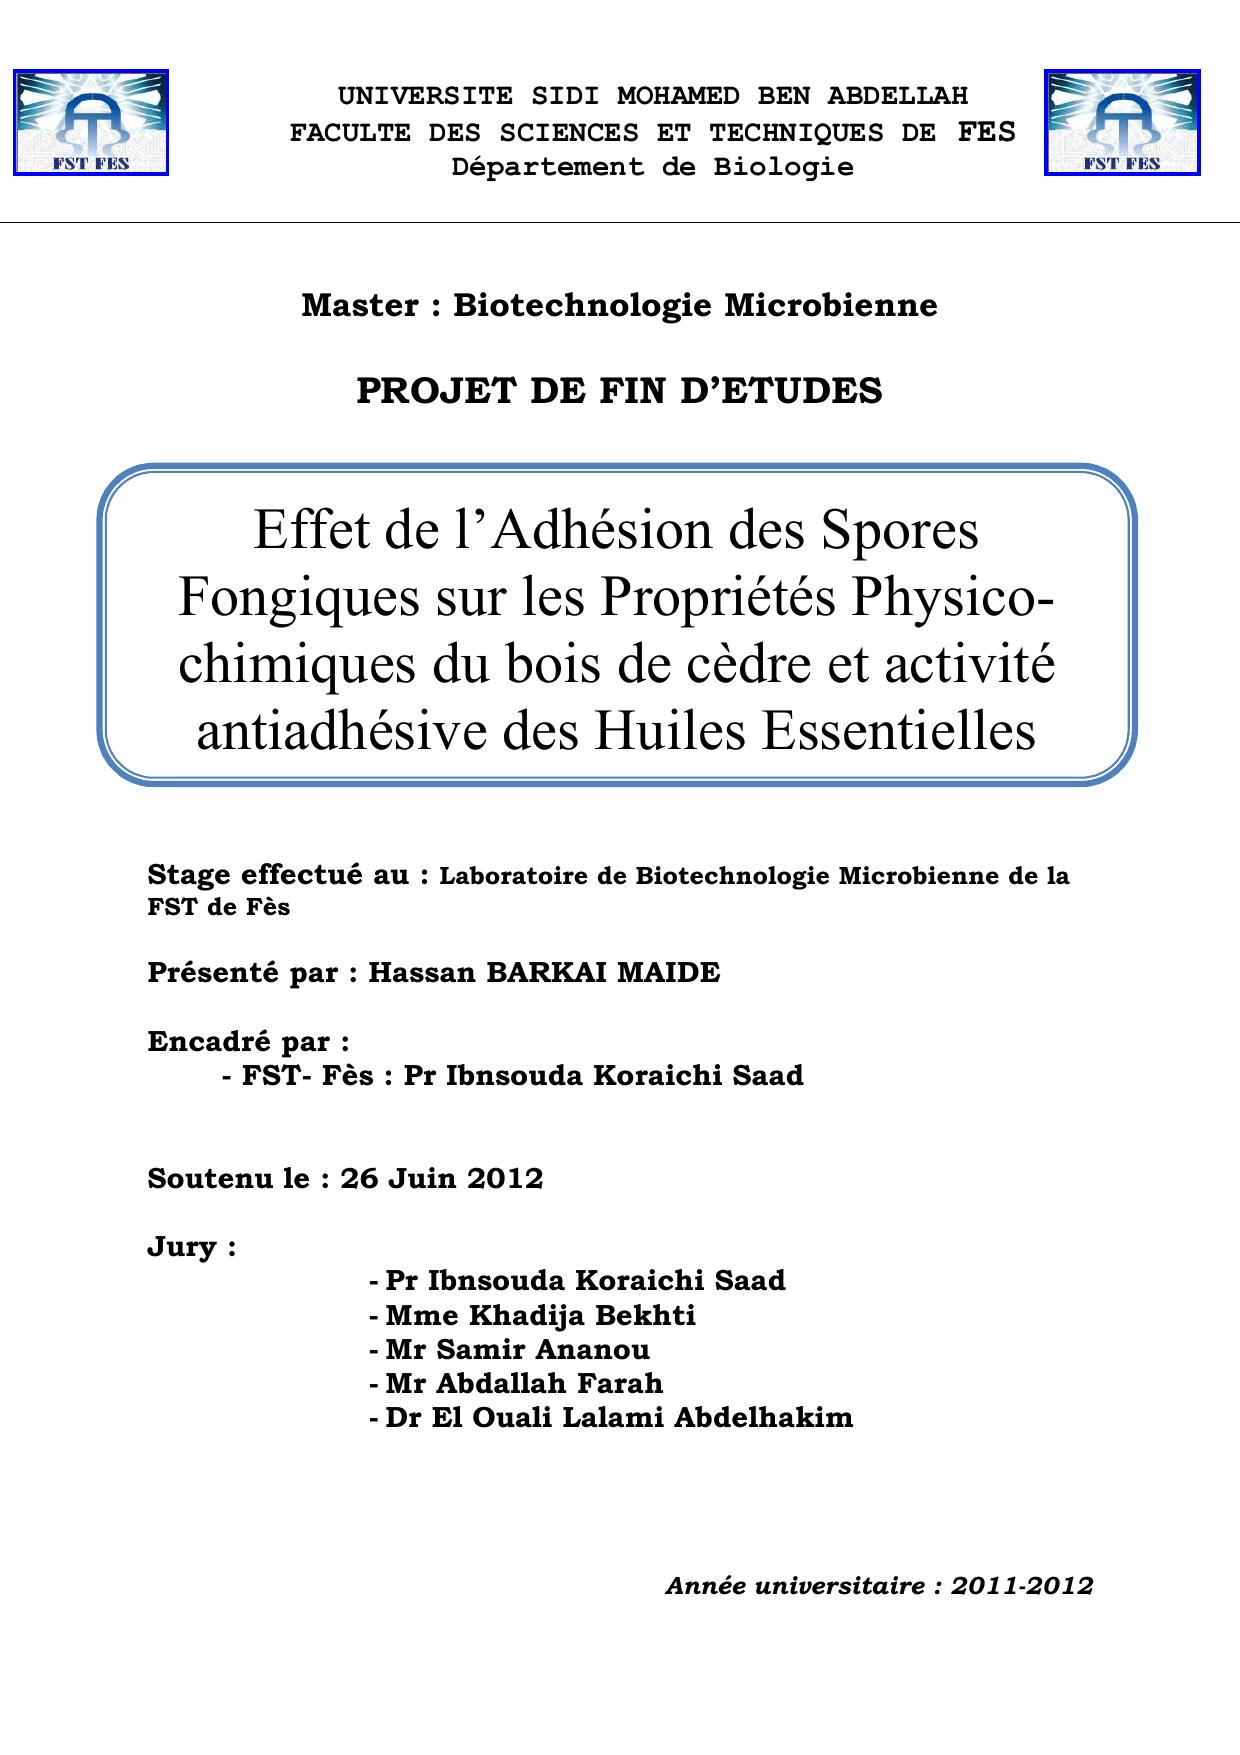 Effet de l’Adhésion des Spores Fongiques sur les Propriétés Physicochimiques du bois de cèdre et activité antiadhésive des Huiles Essentielles